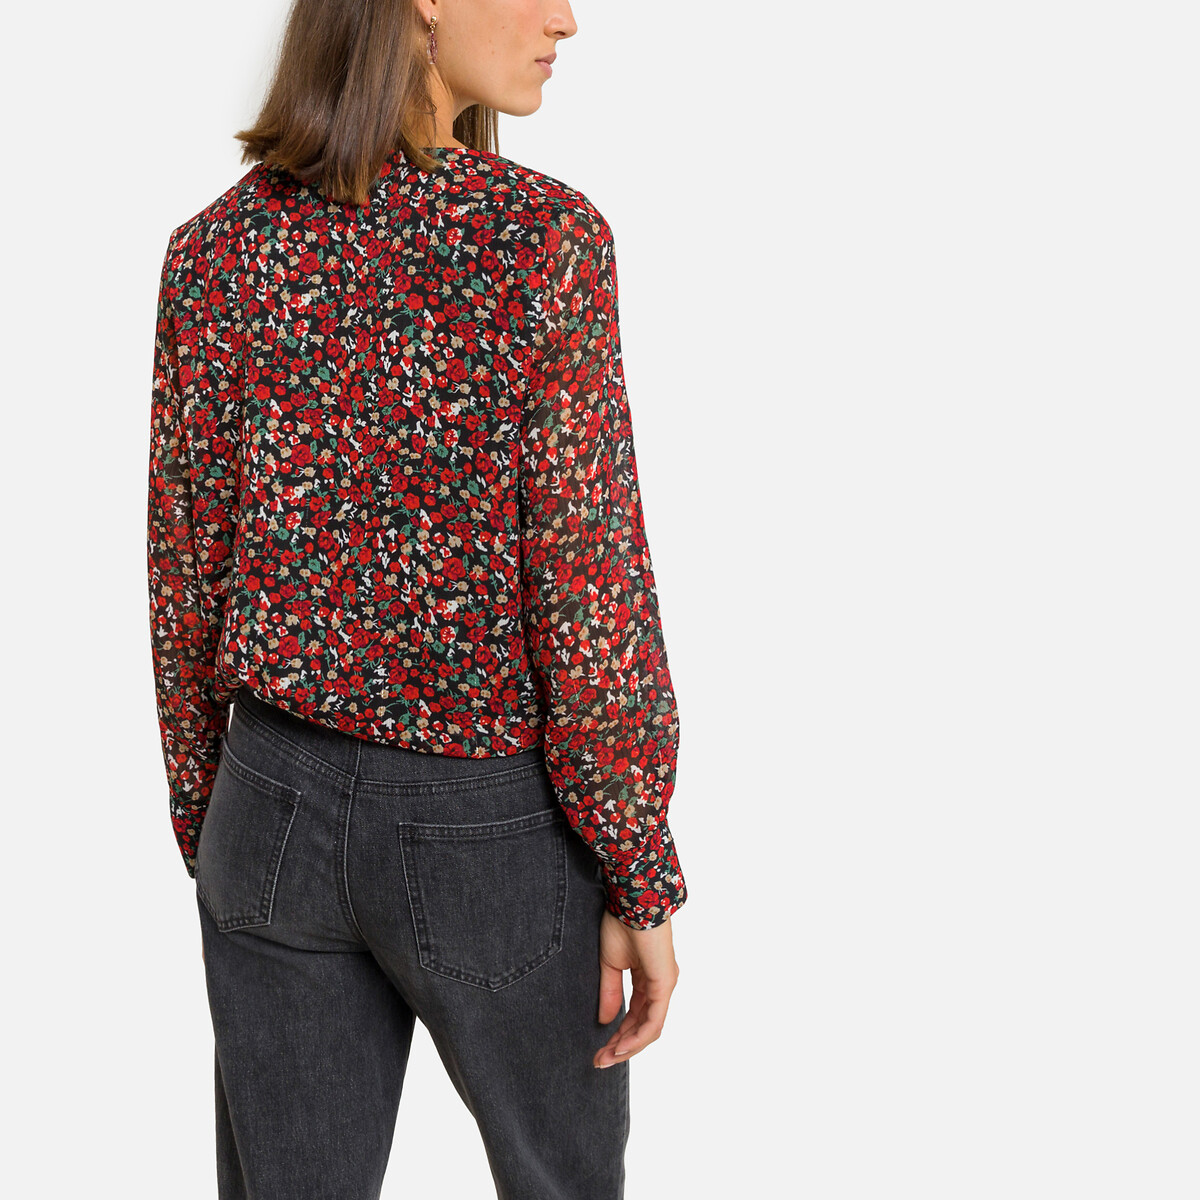 Блузка ONLY Блузка С цветочным принтом и V-образным вырезом M черный, размер M - фото 4